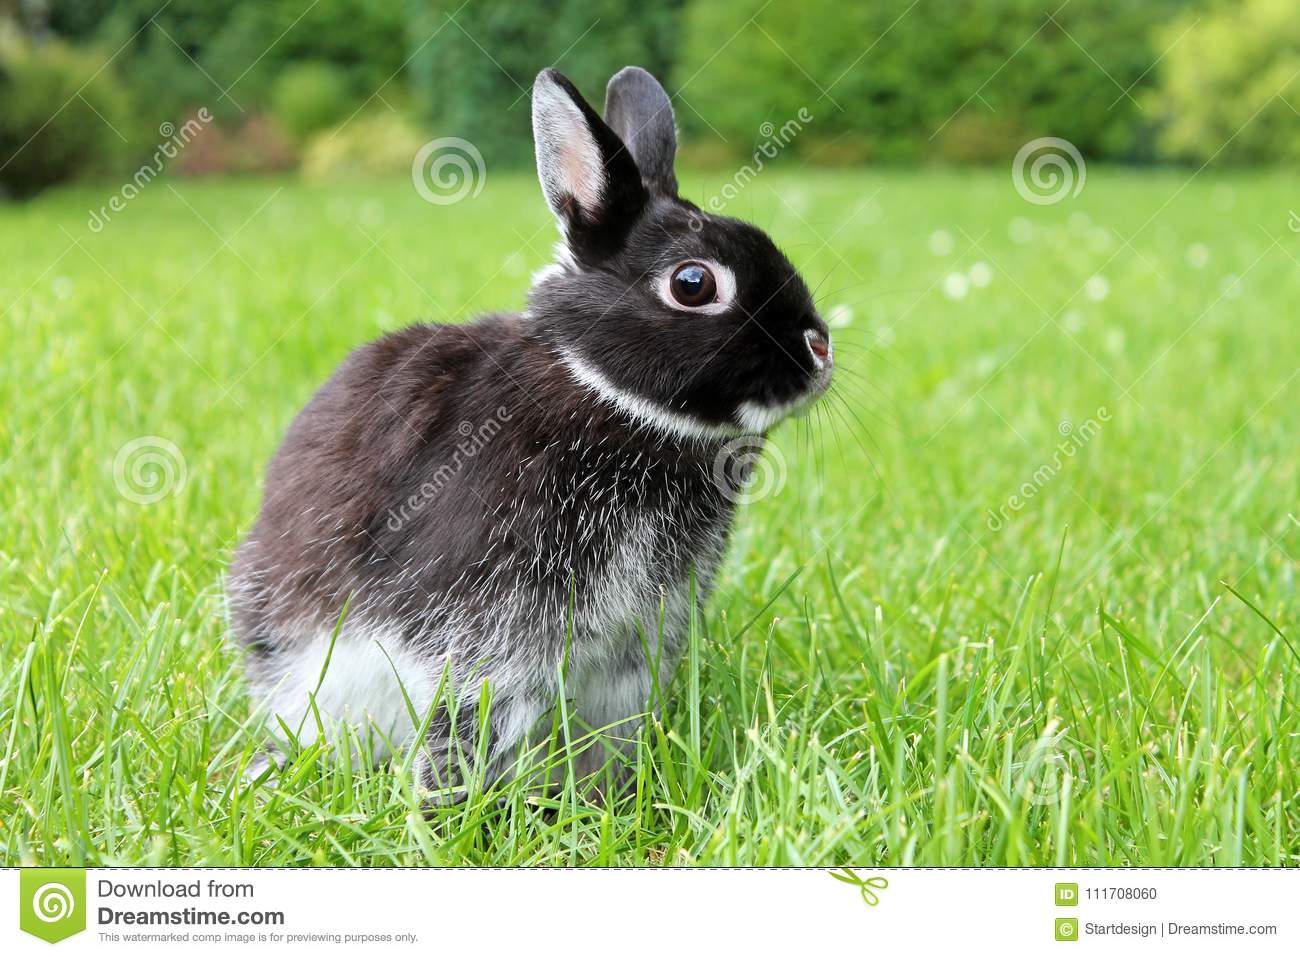 Кролик баран: описание породы, фото, виды, уход и содержание, отзывы